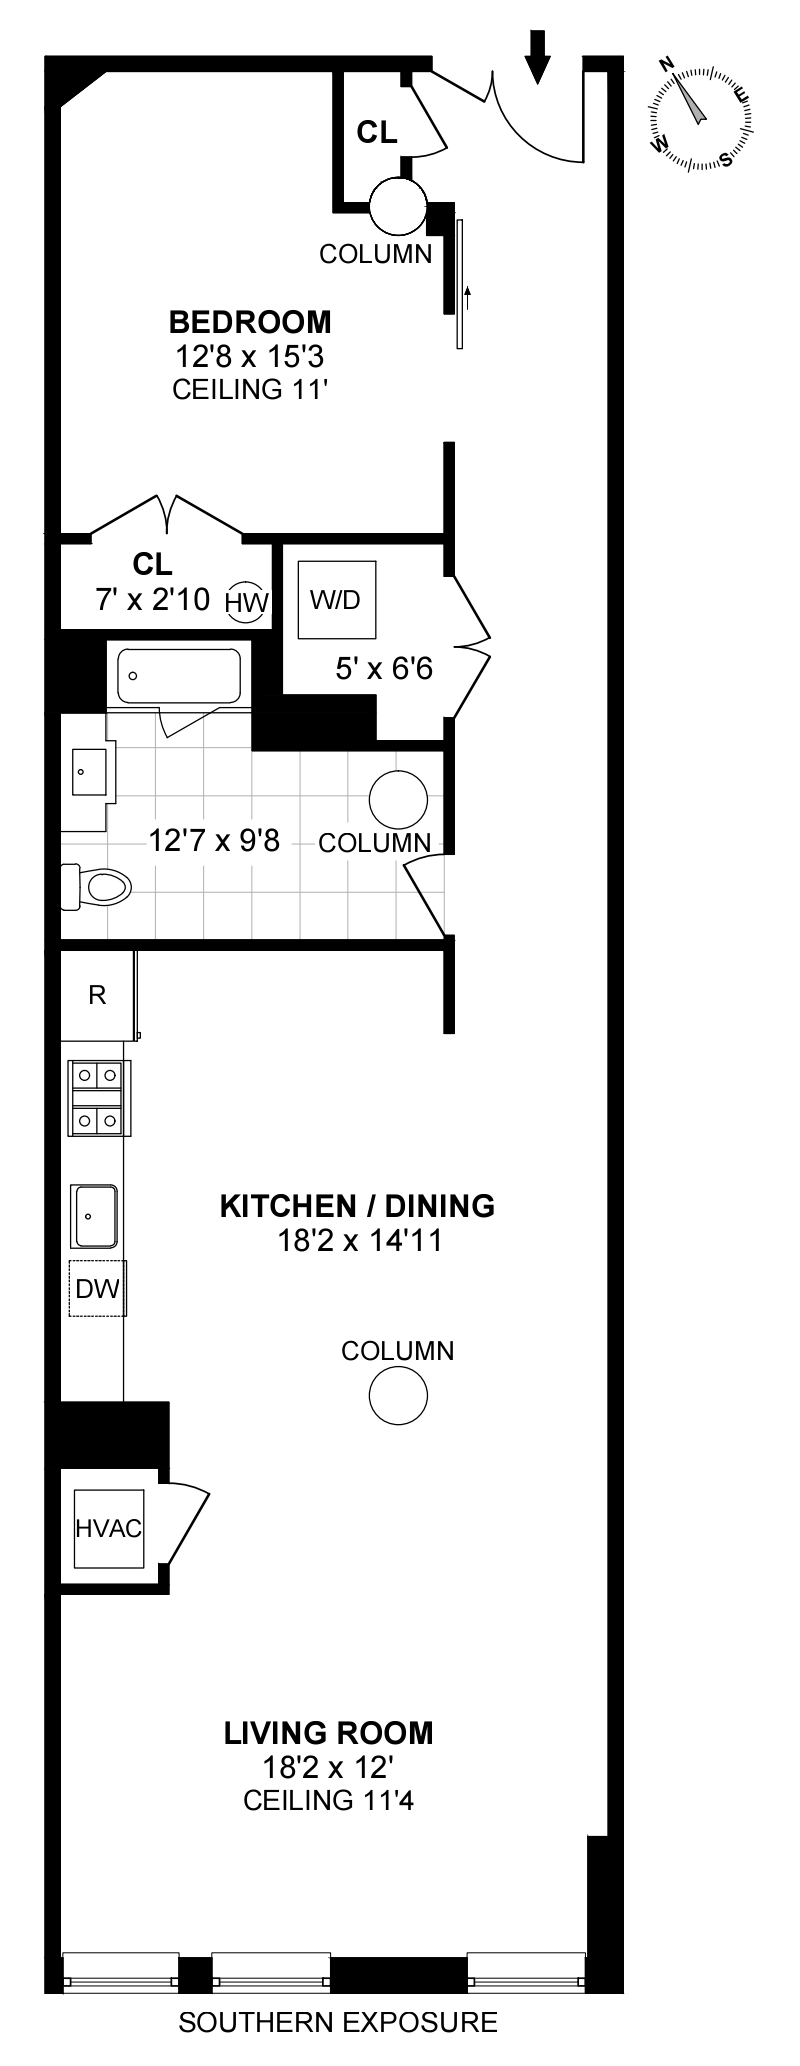 Floorplan for 140 Bay St, 5I